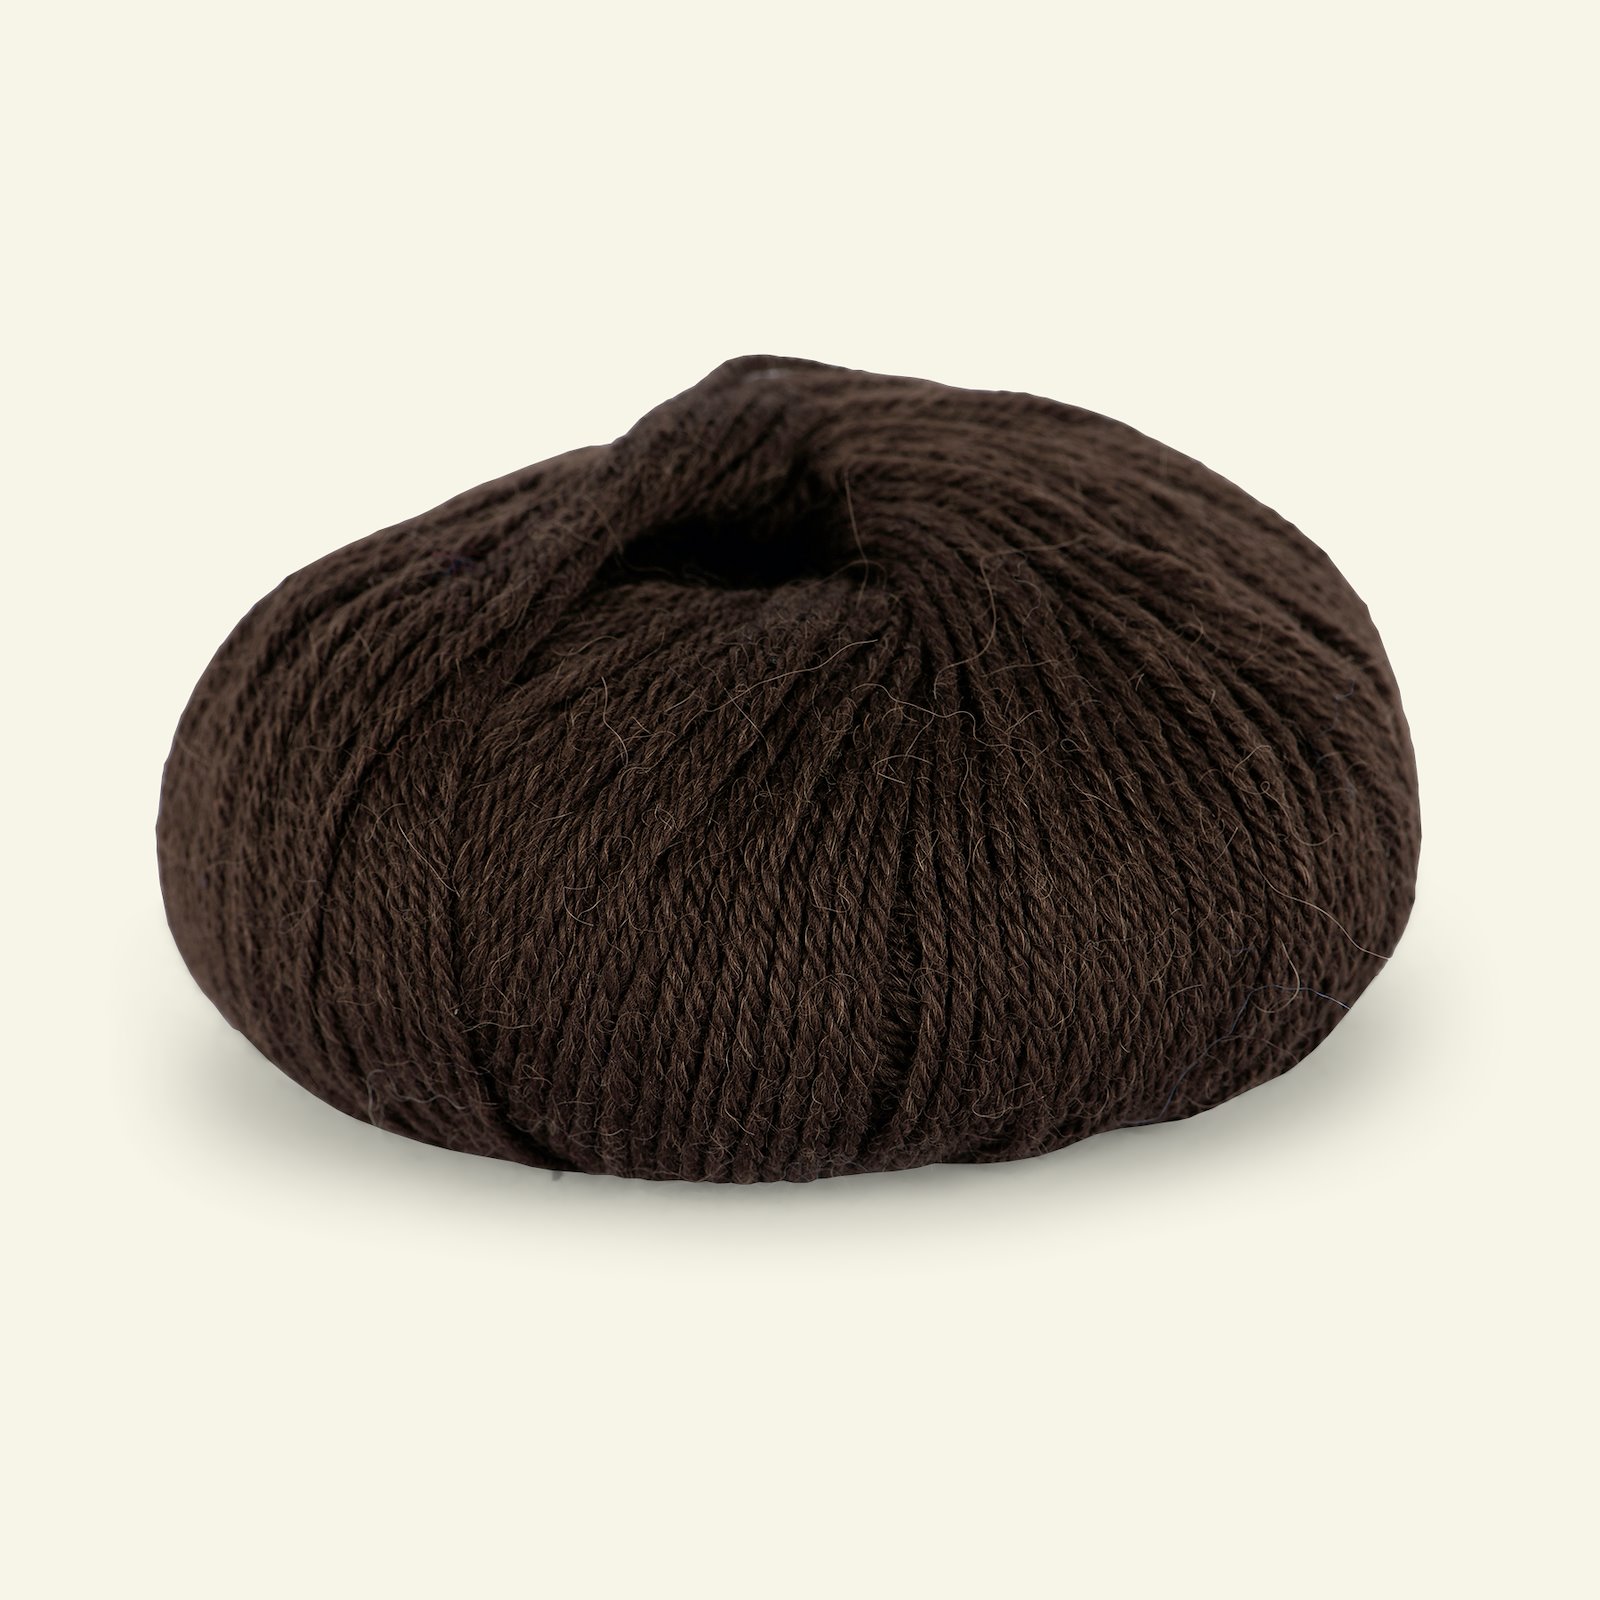 Du Store Alpakka, alpaca merino mixed yarn "Sterk", dark brown (810) 90000659_pack_b